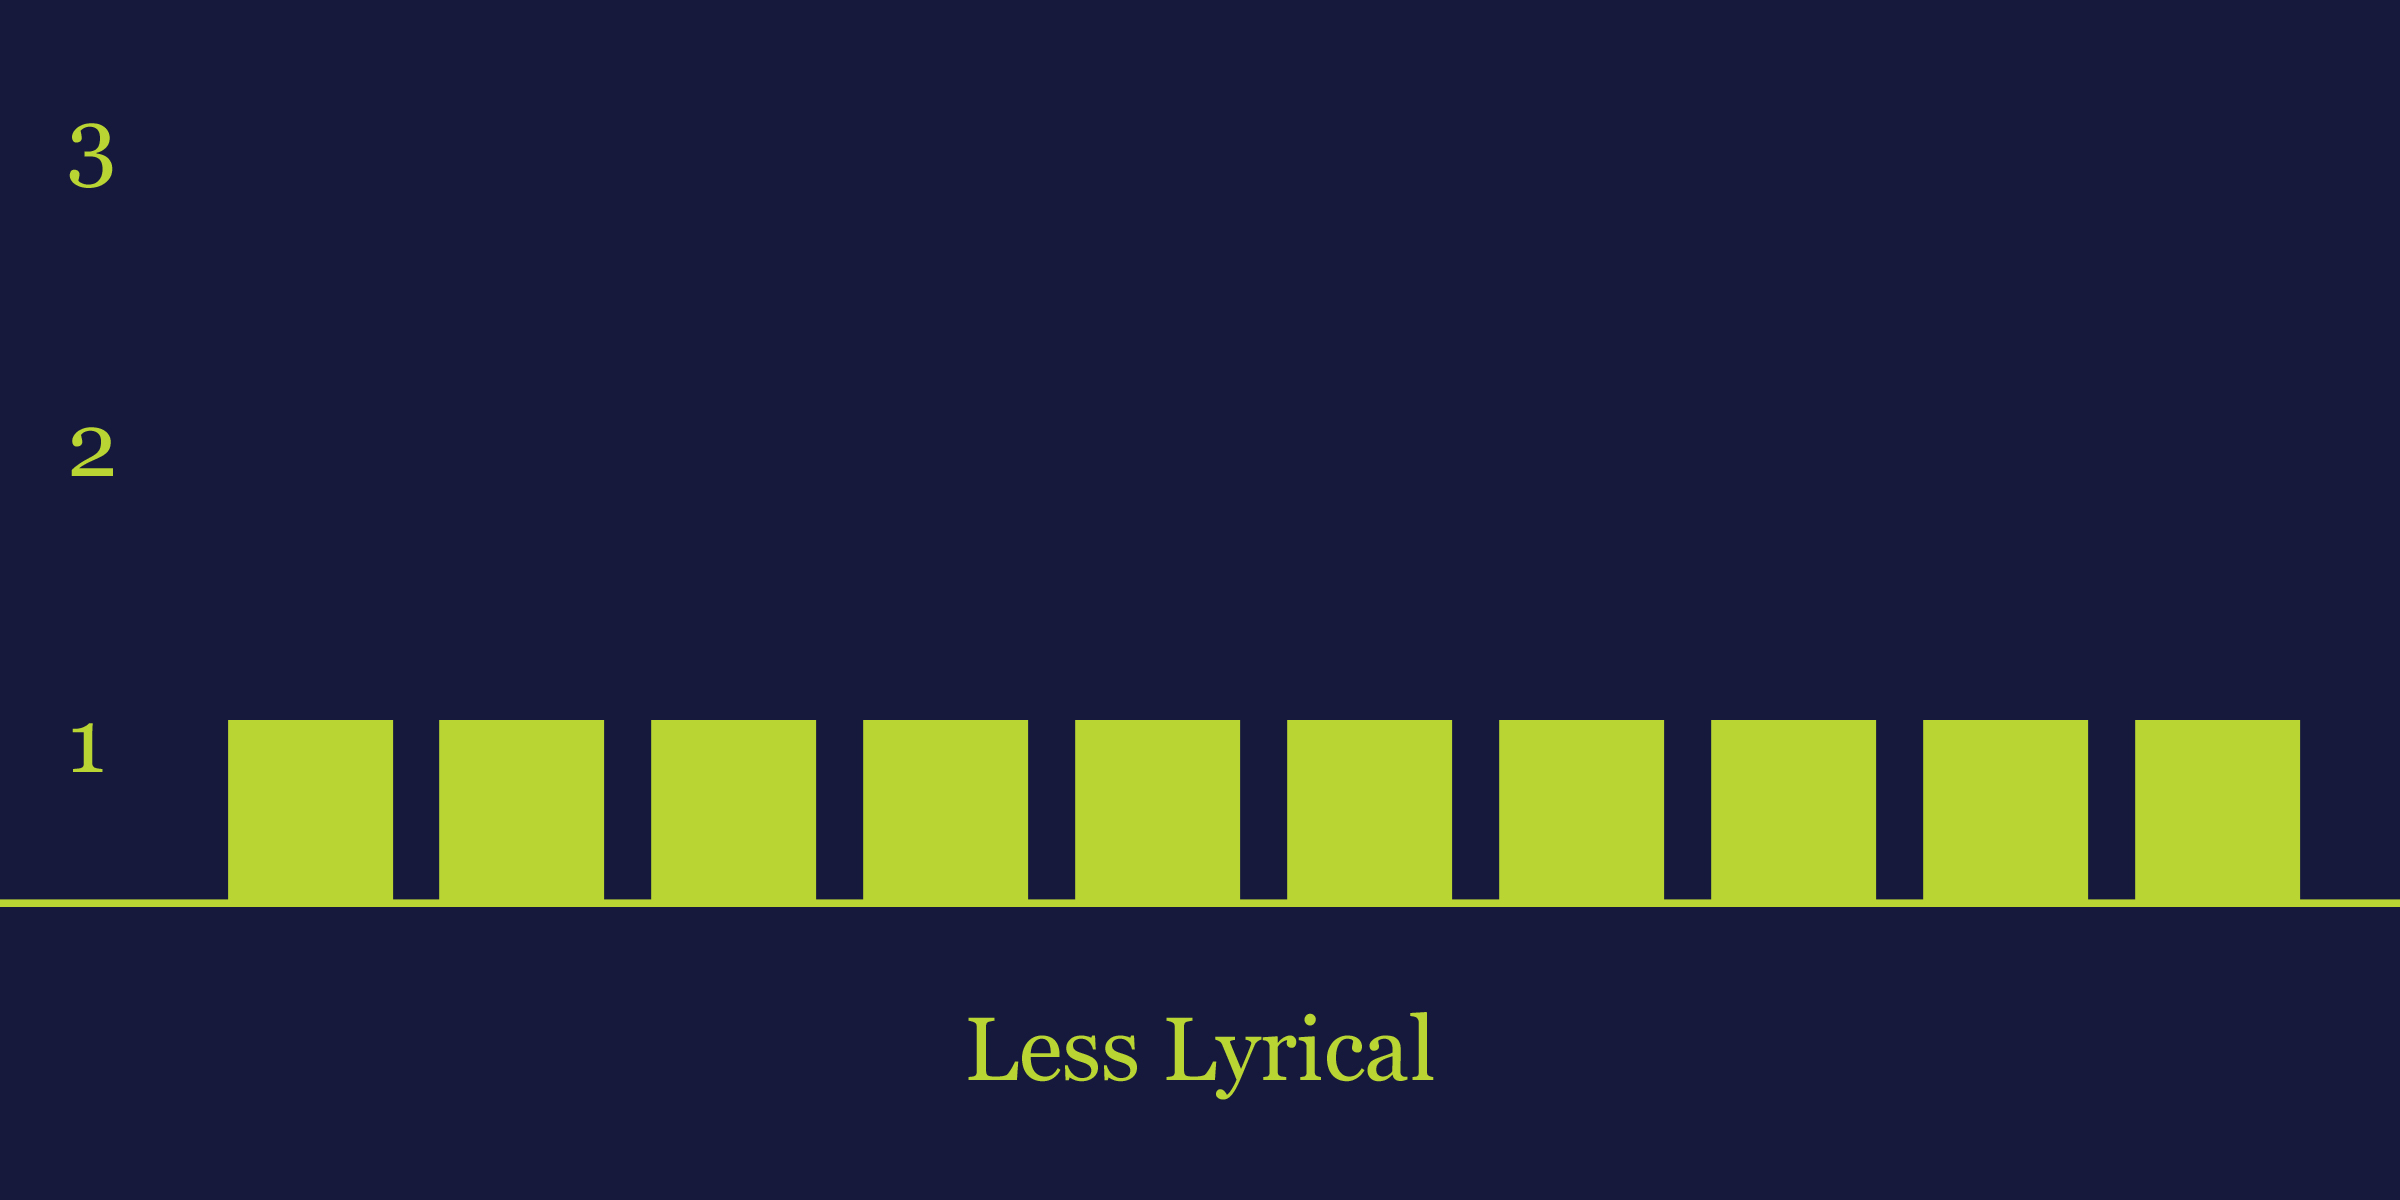 Less Lyrical Graph